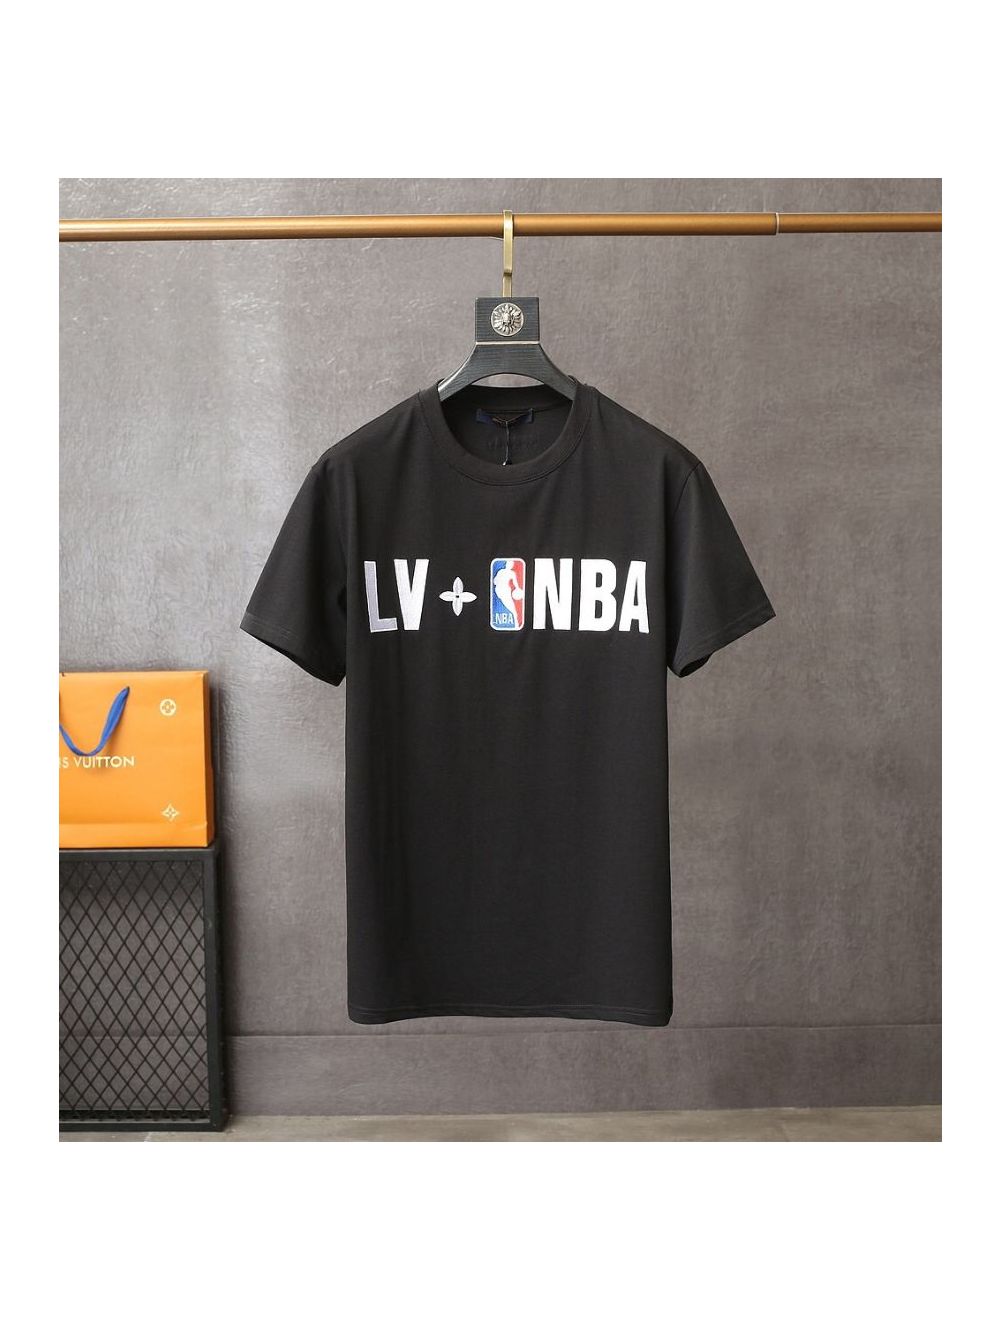 BEST All Black Supreme Louis Vuitton Laundry Basket • Shirtnation - Shop  trending t-shirts online in US